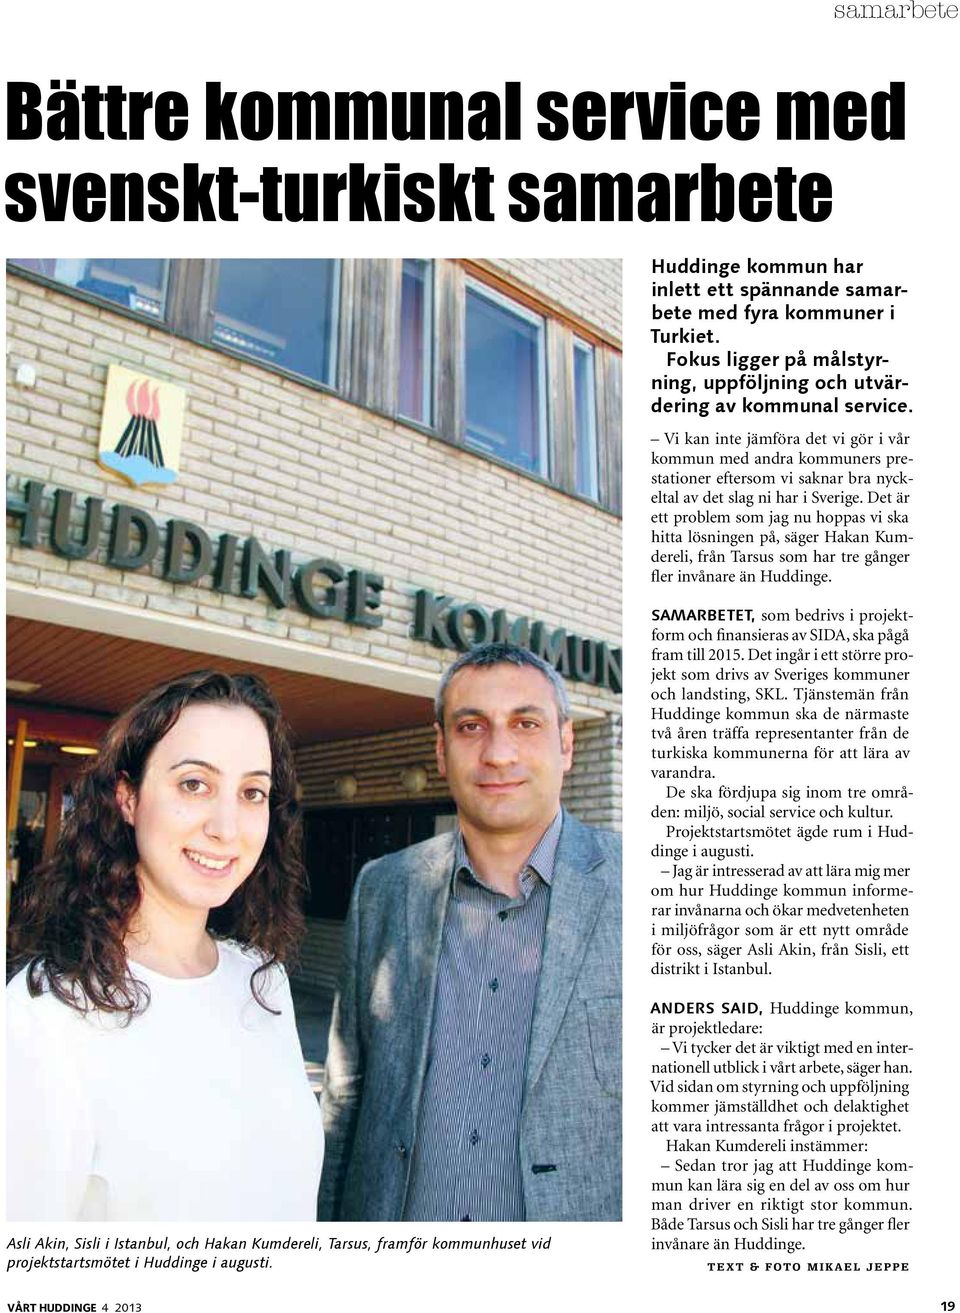 Vi kan inte jämföra det vi gör i vår kommun med andra kommuners prestationer eftersom vi saknar bra nyckeltal av det slag ni har i Sverige.